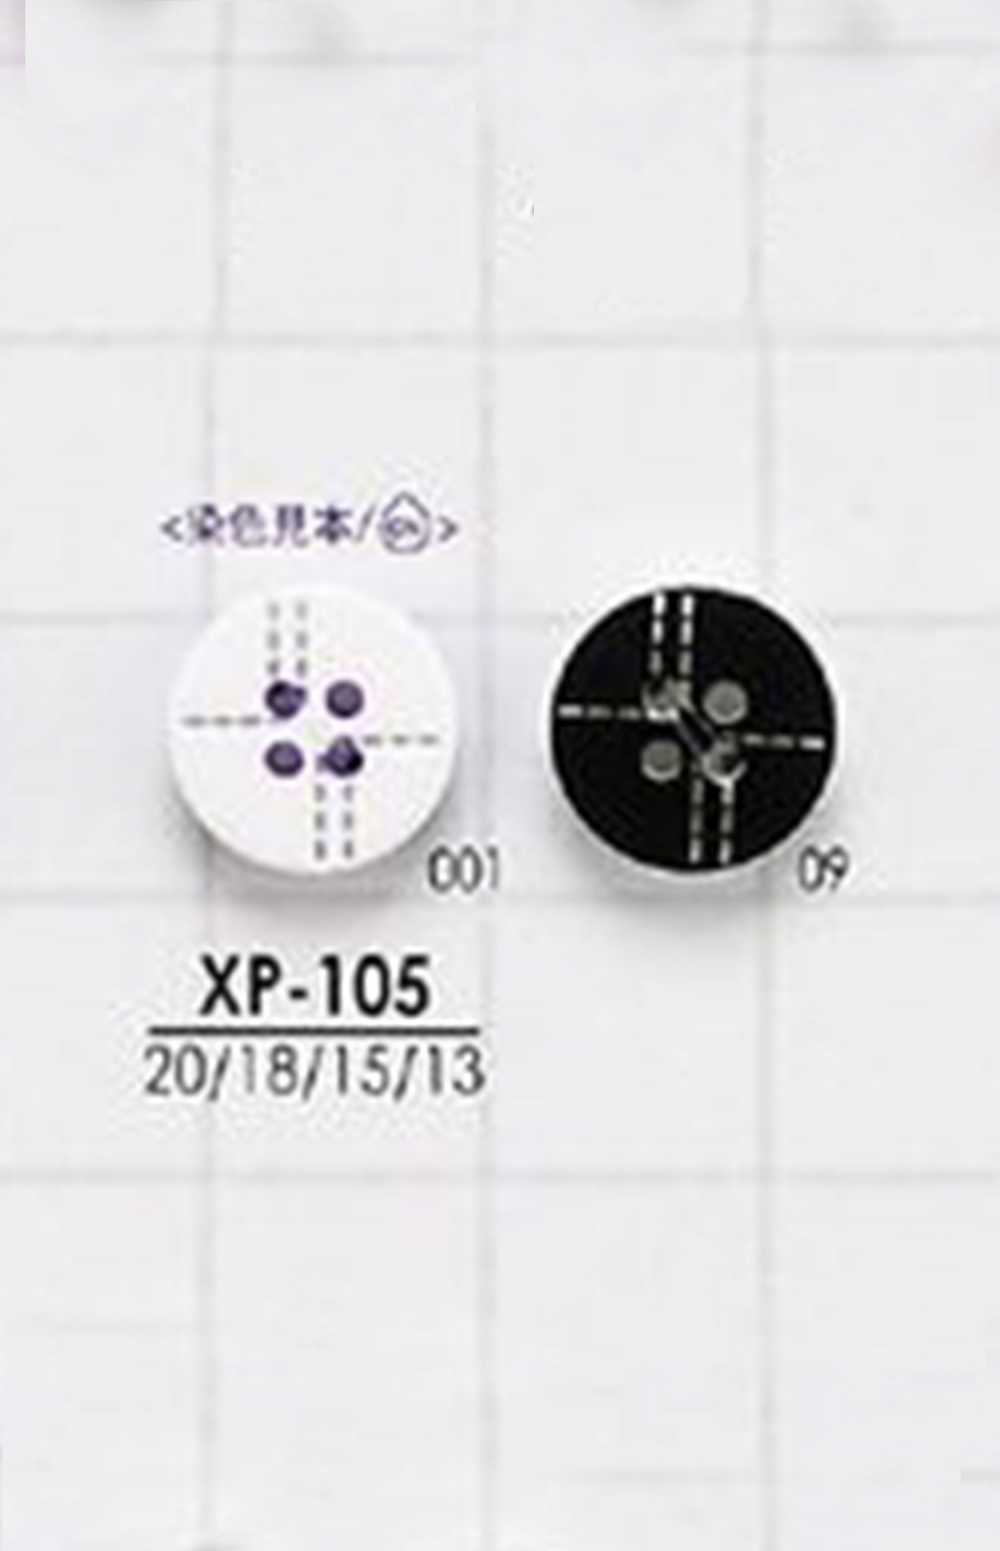 XP-105 涤纶 4 孔光面纽扣 爱丽丝纽扣